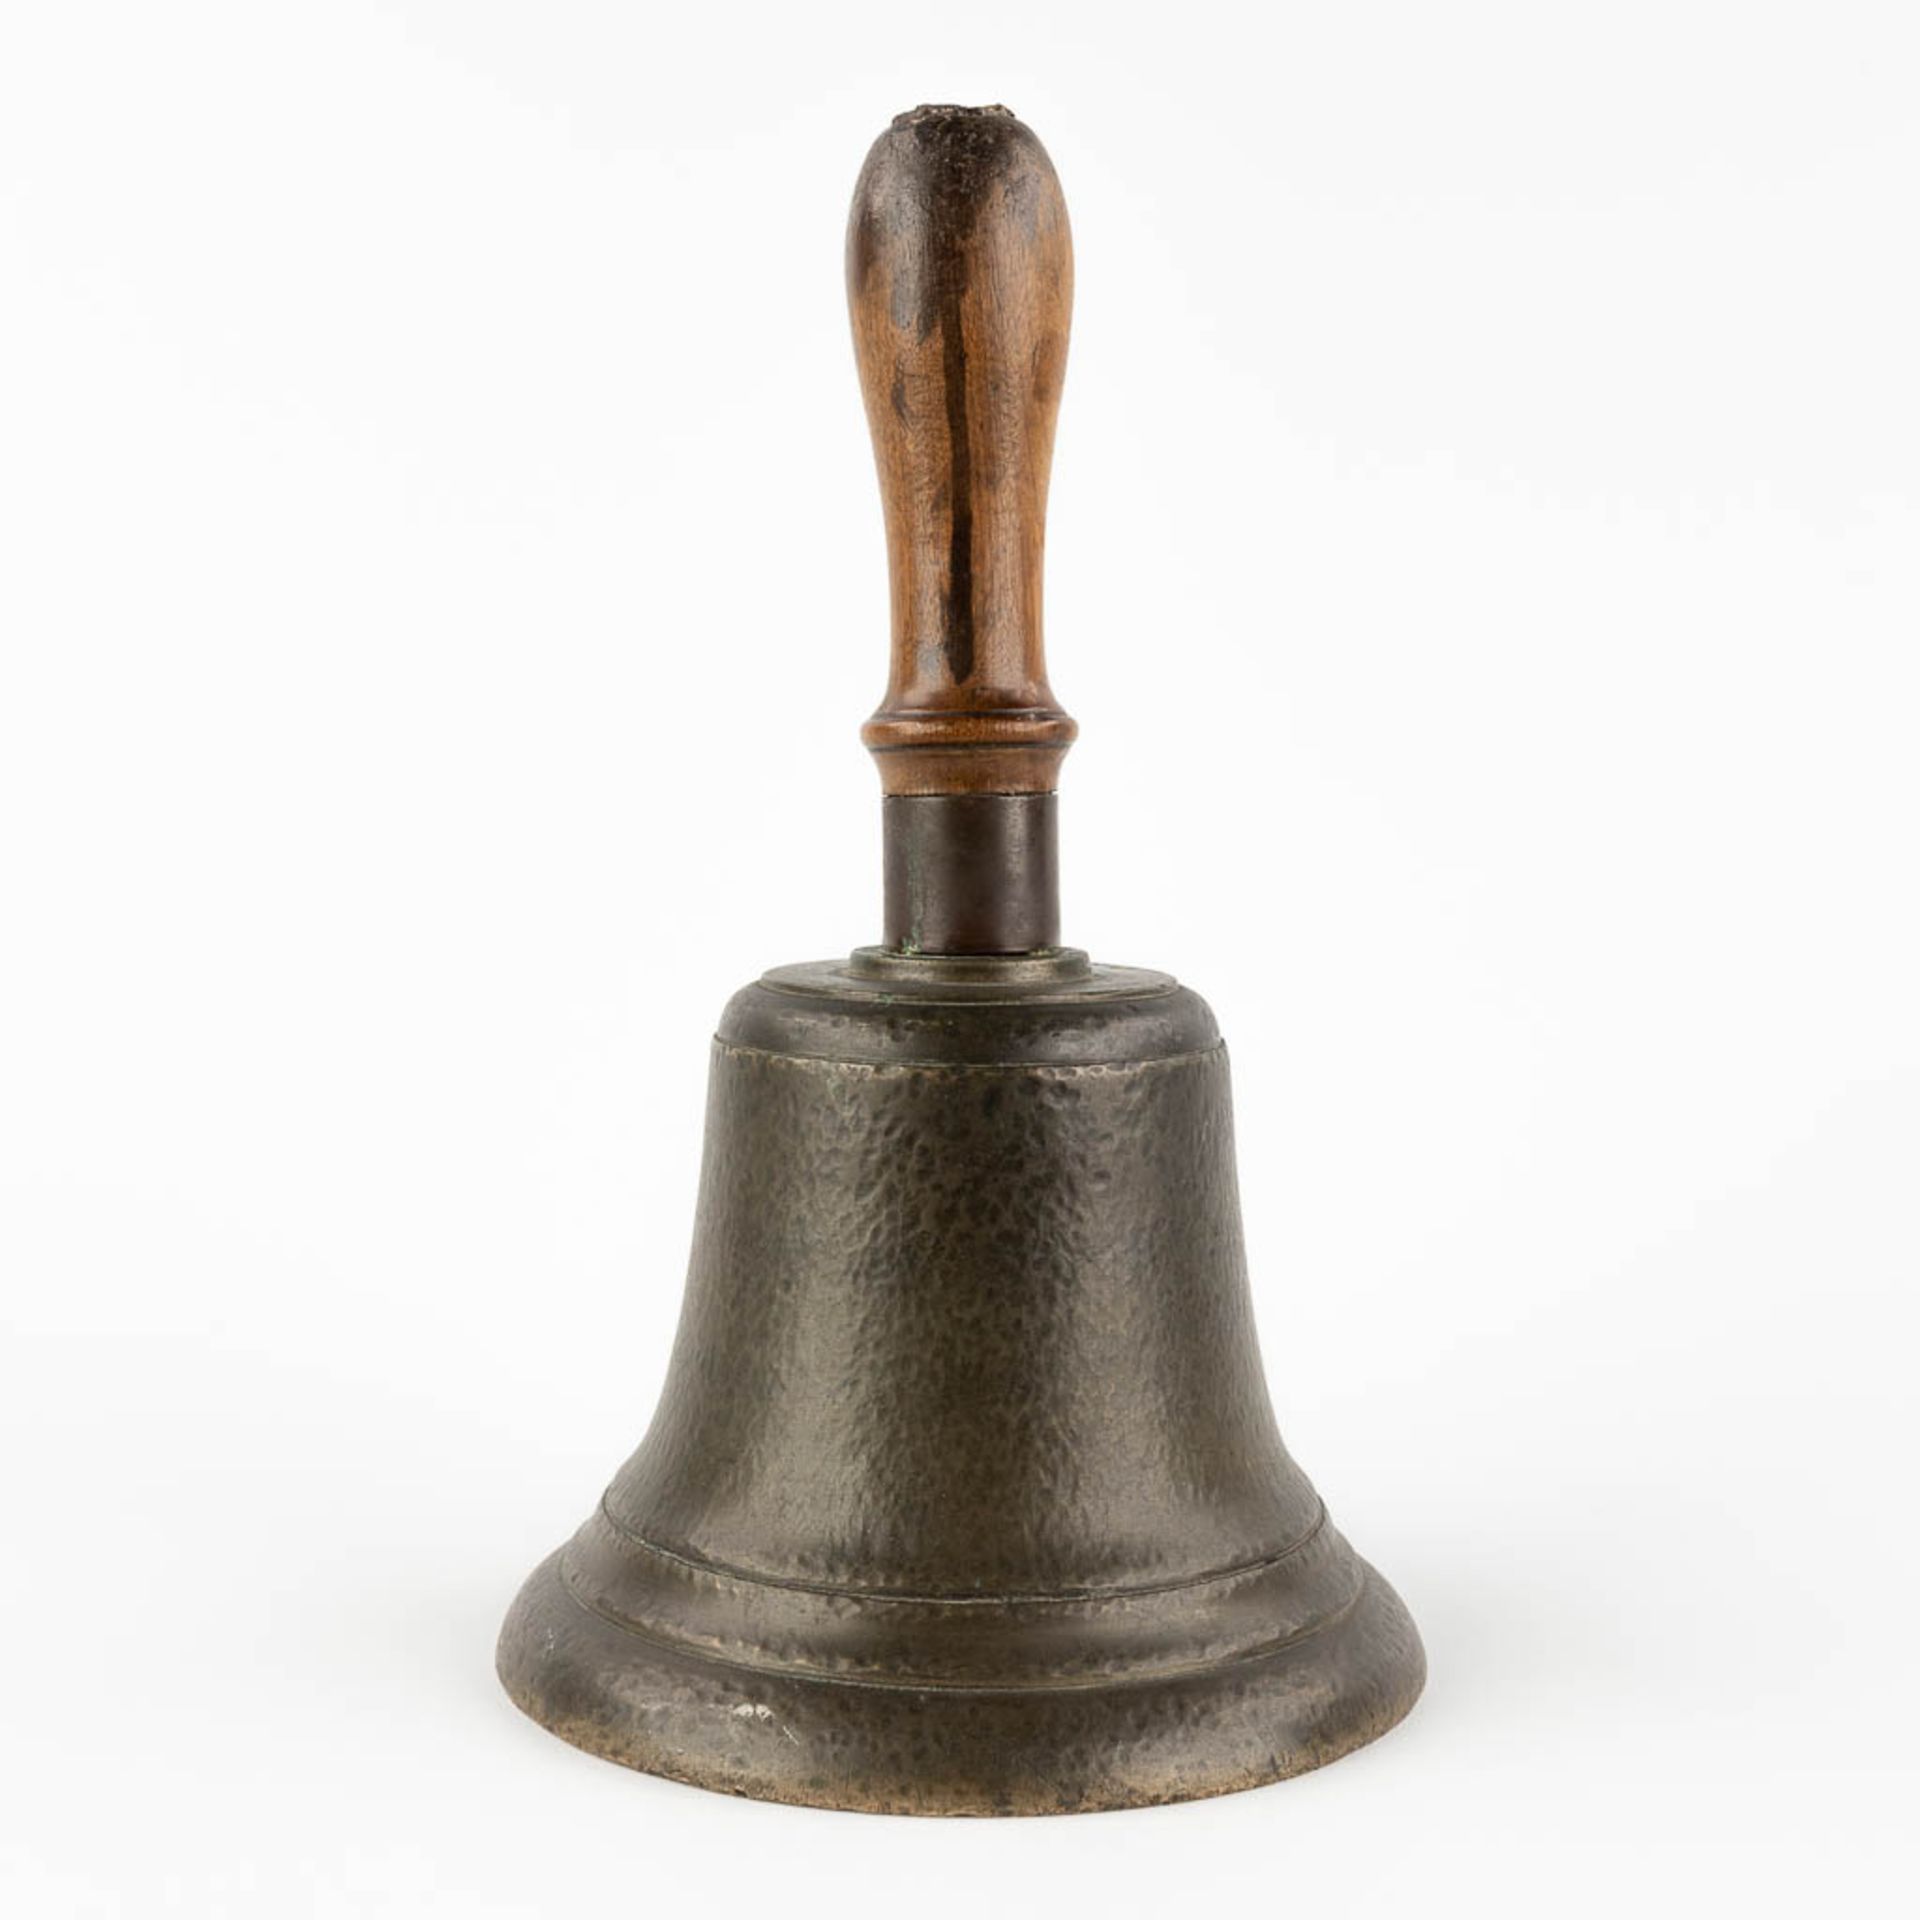 An antique 'Handbell' bronze with an inscription 'J.S. Beckett', 19th C. (H:28 x D:17 cm) - Image 4 of 10